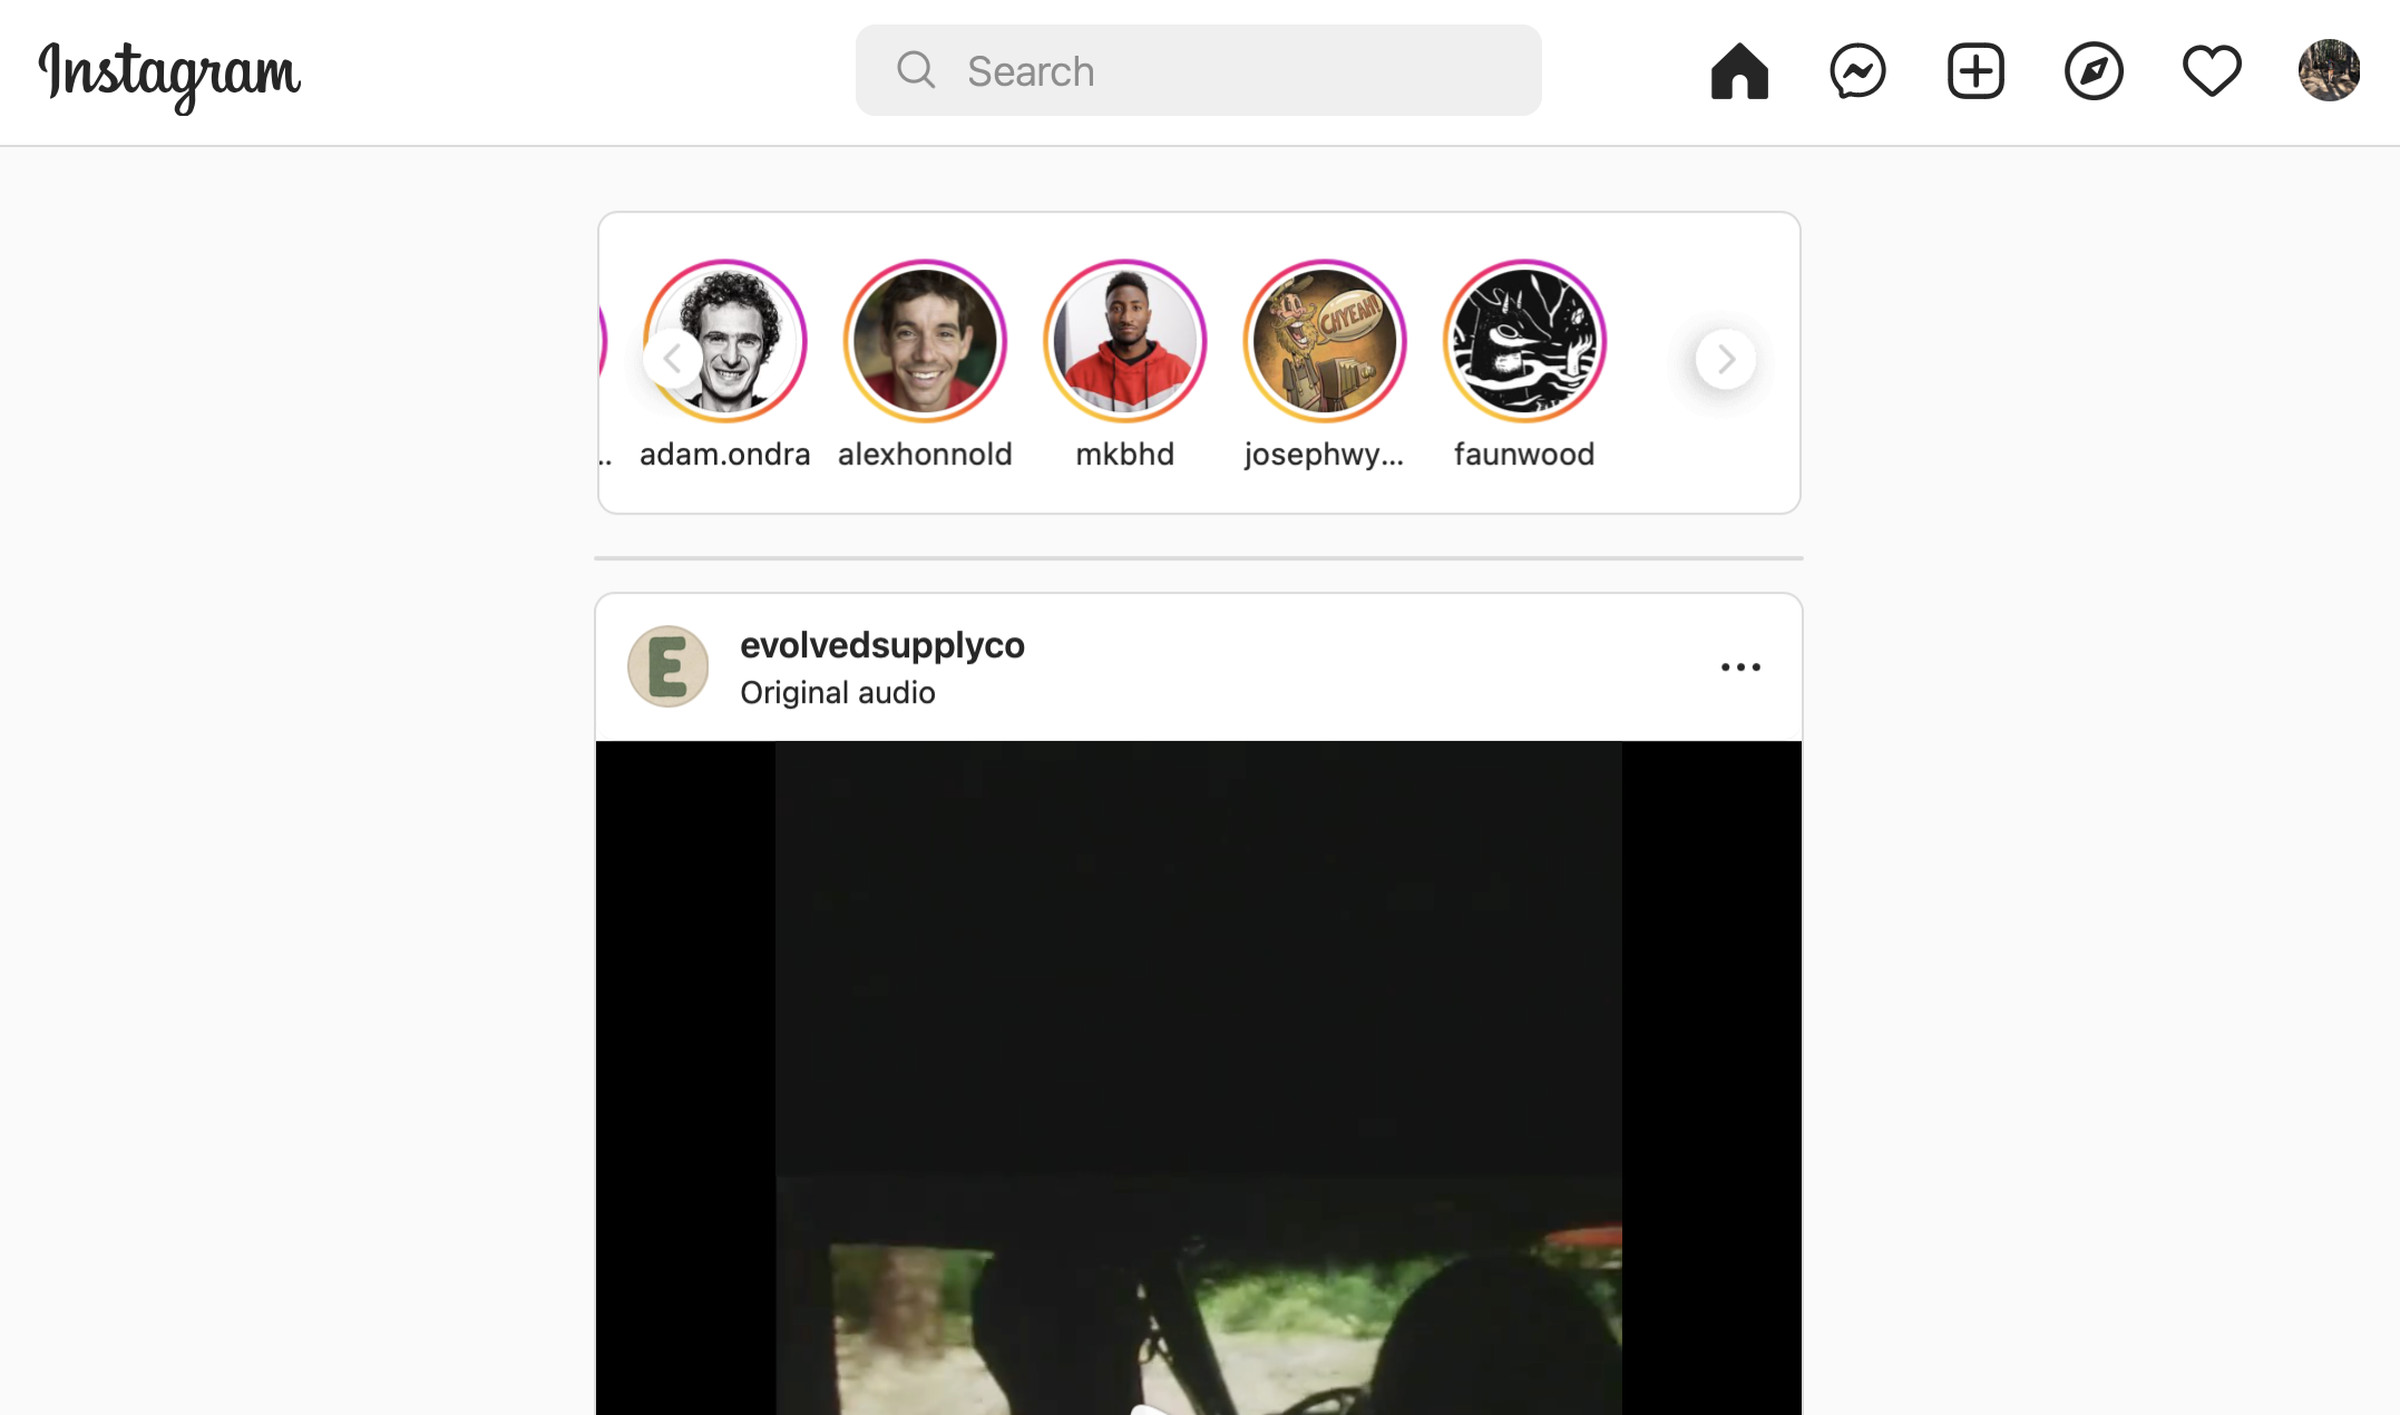 En üstte ana sayfa, mesajlar, artı, pusula ve kalp düğmesi bulunan web için Instagram'ın ekran görüntüsü.